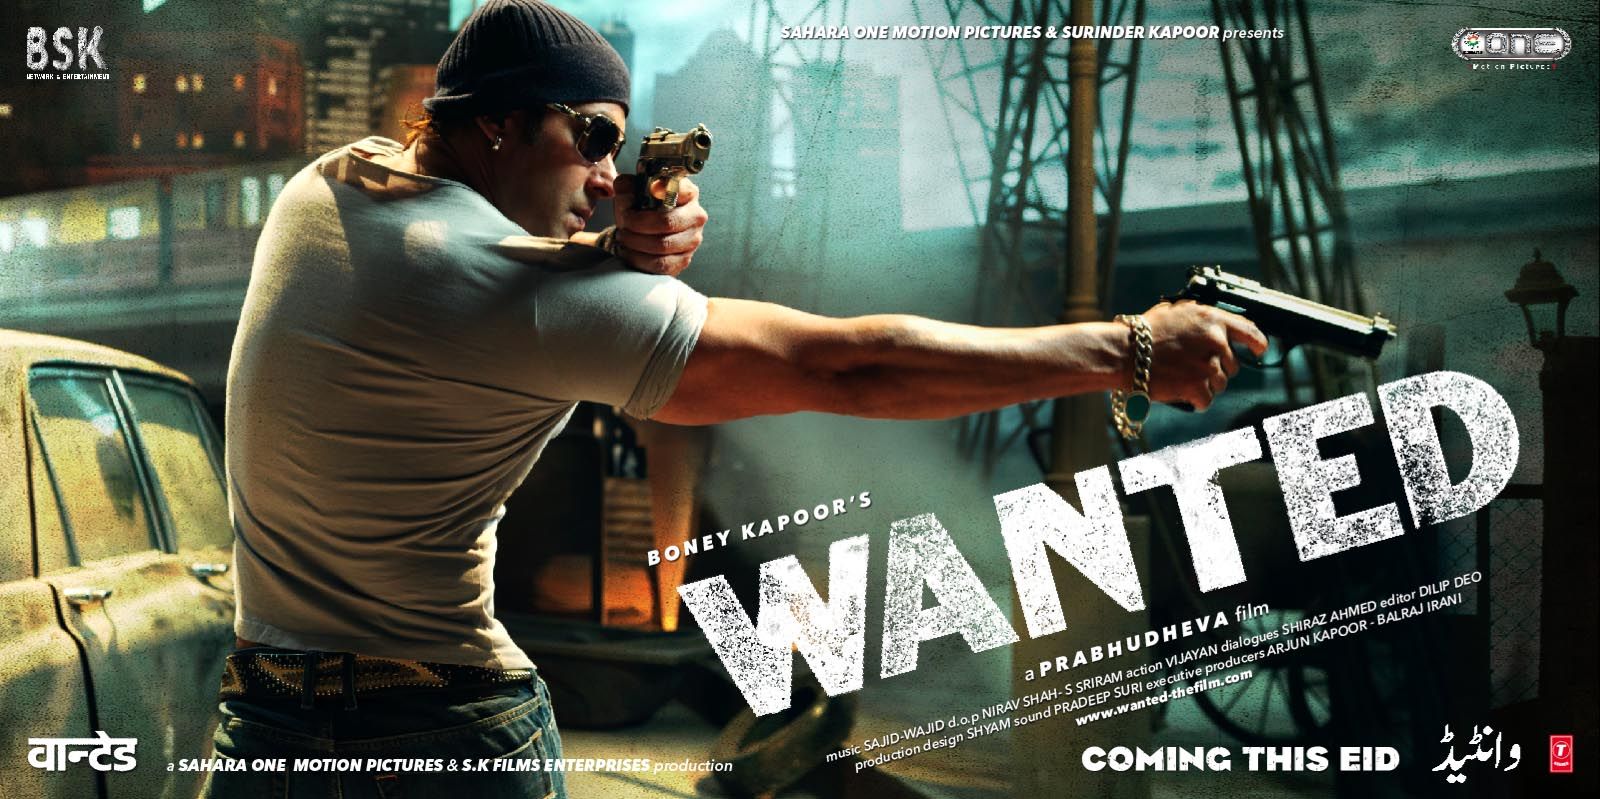 Salman Khan Upcomingn movie Wanted 2